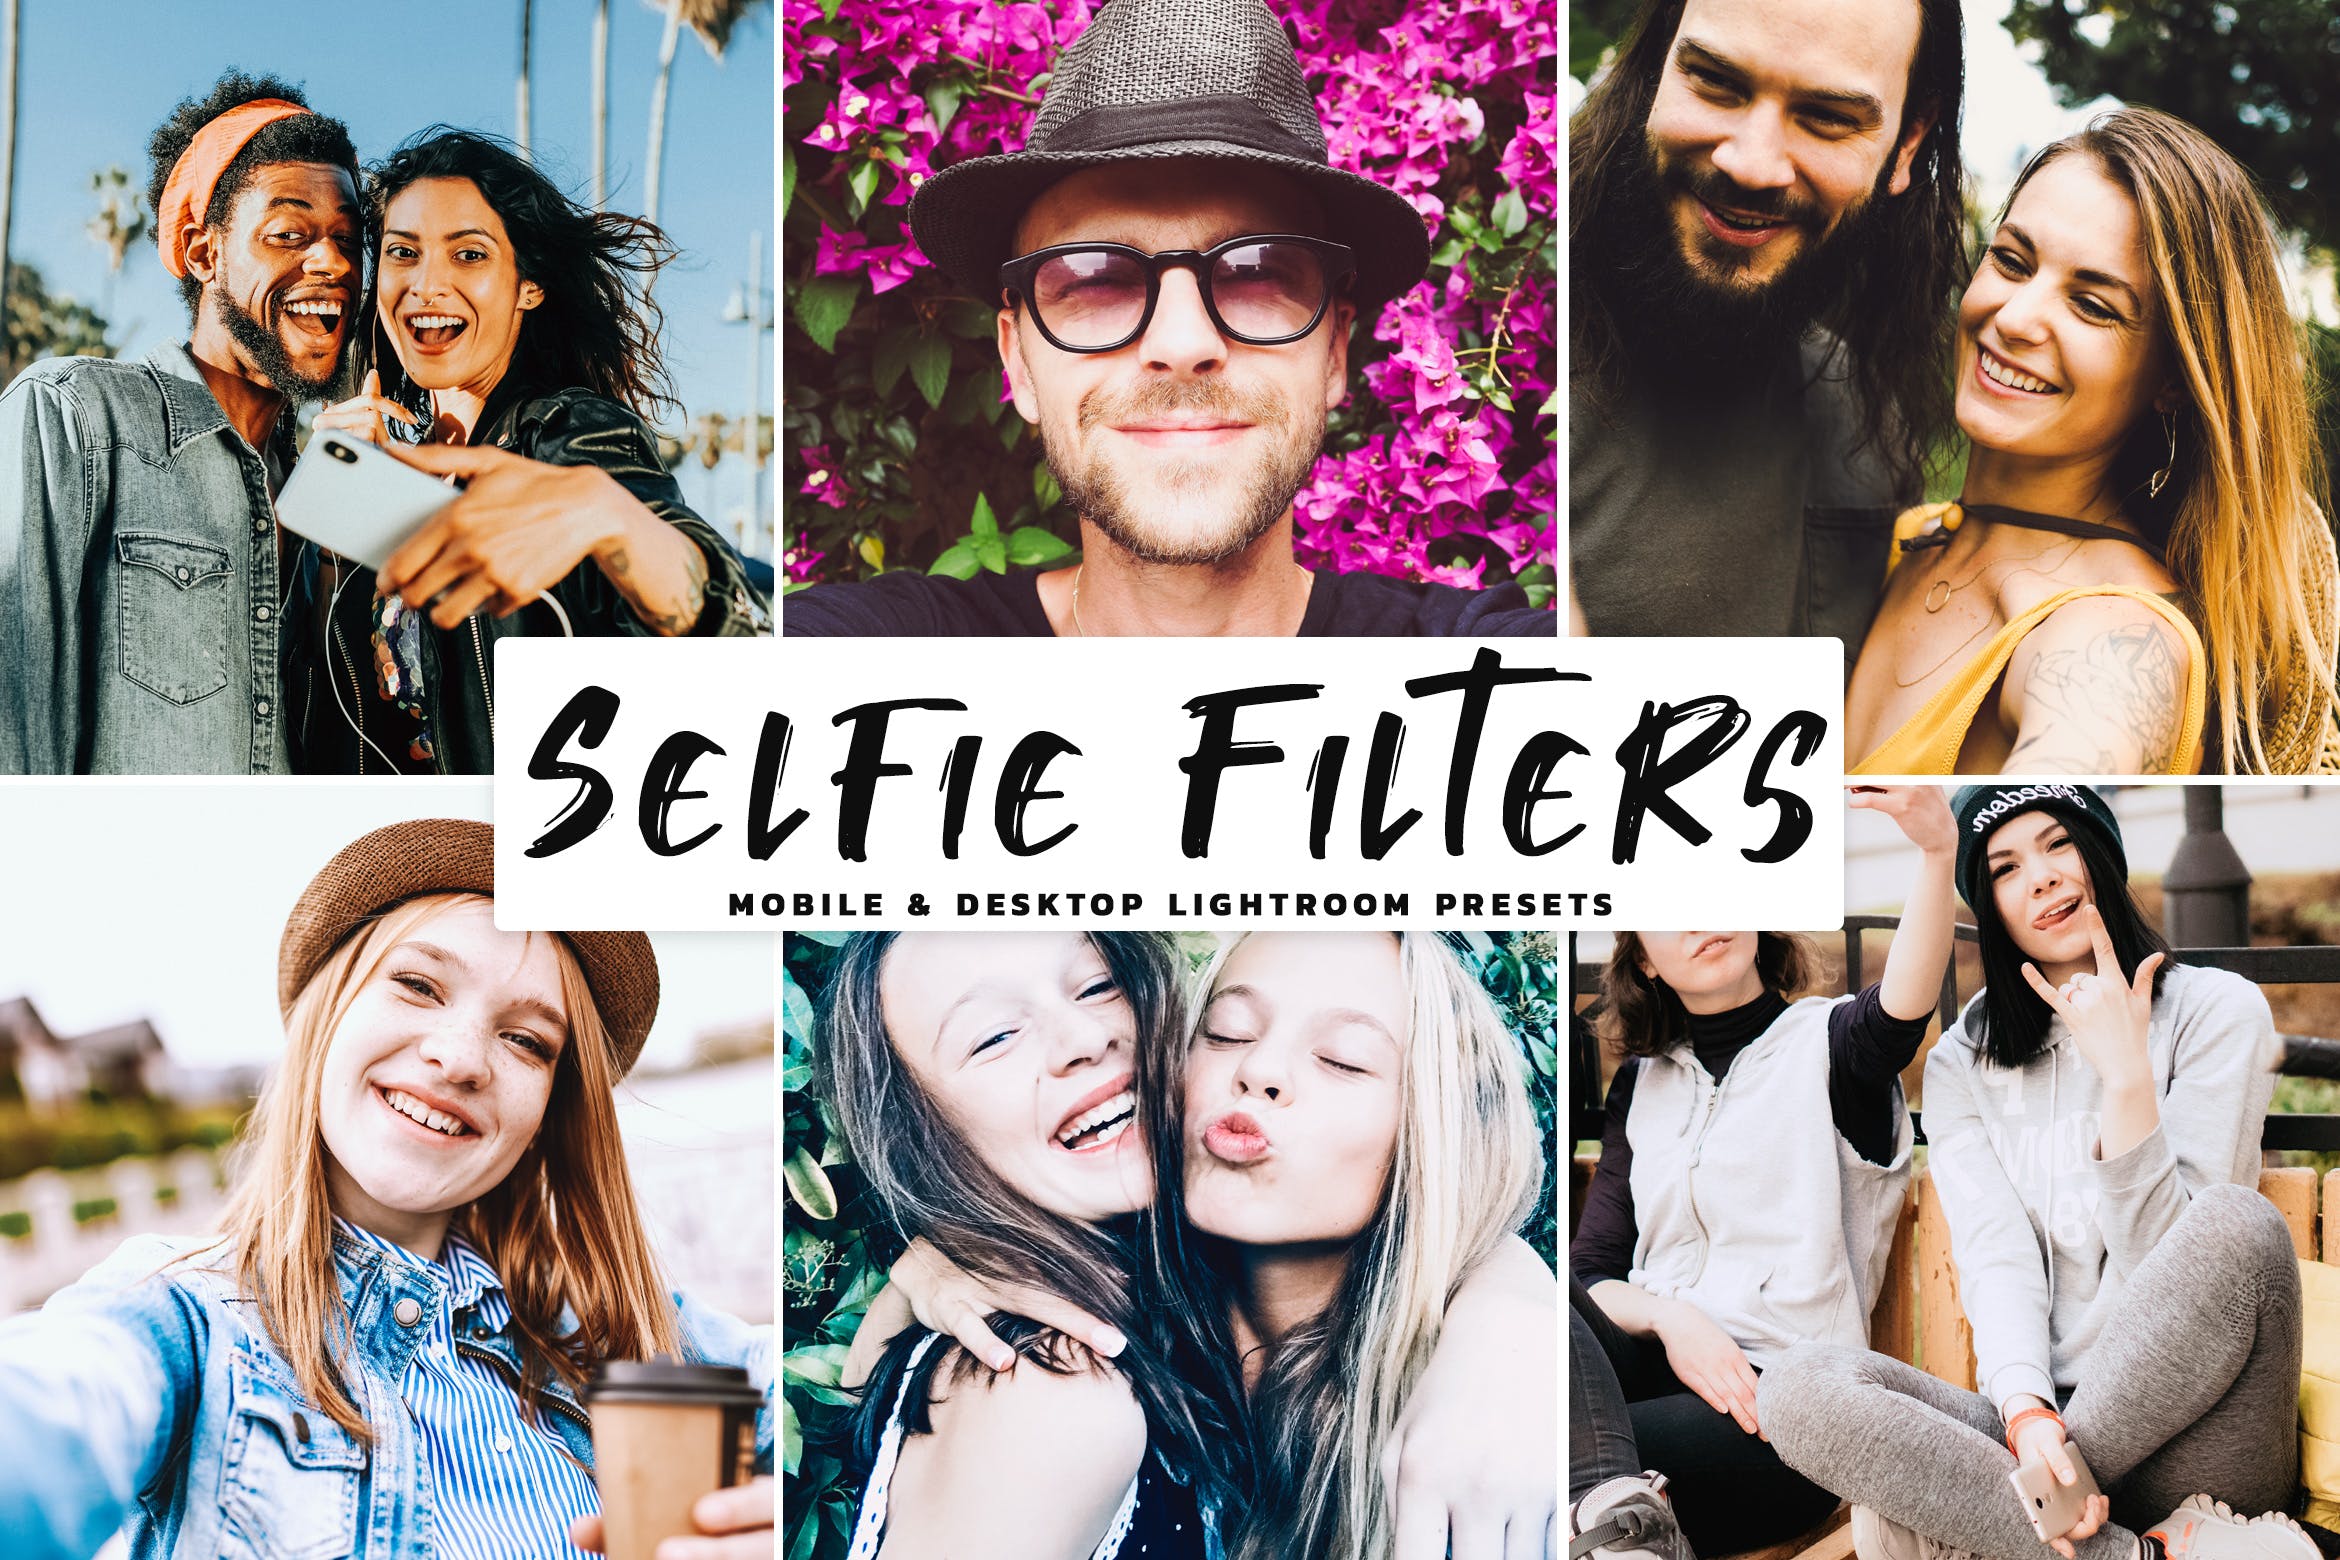 人像摄影影楼级后期调色滤镜LR预设 Selfie Filters Mobile & Desktop Lightroom Presets插图